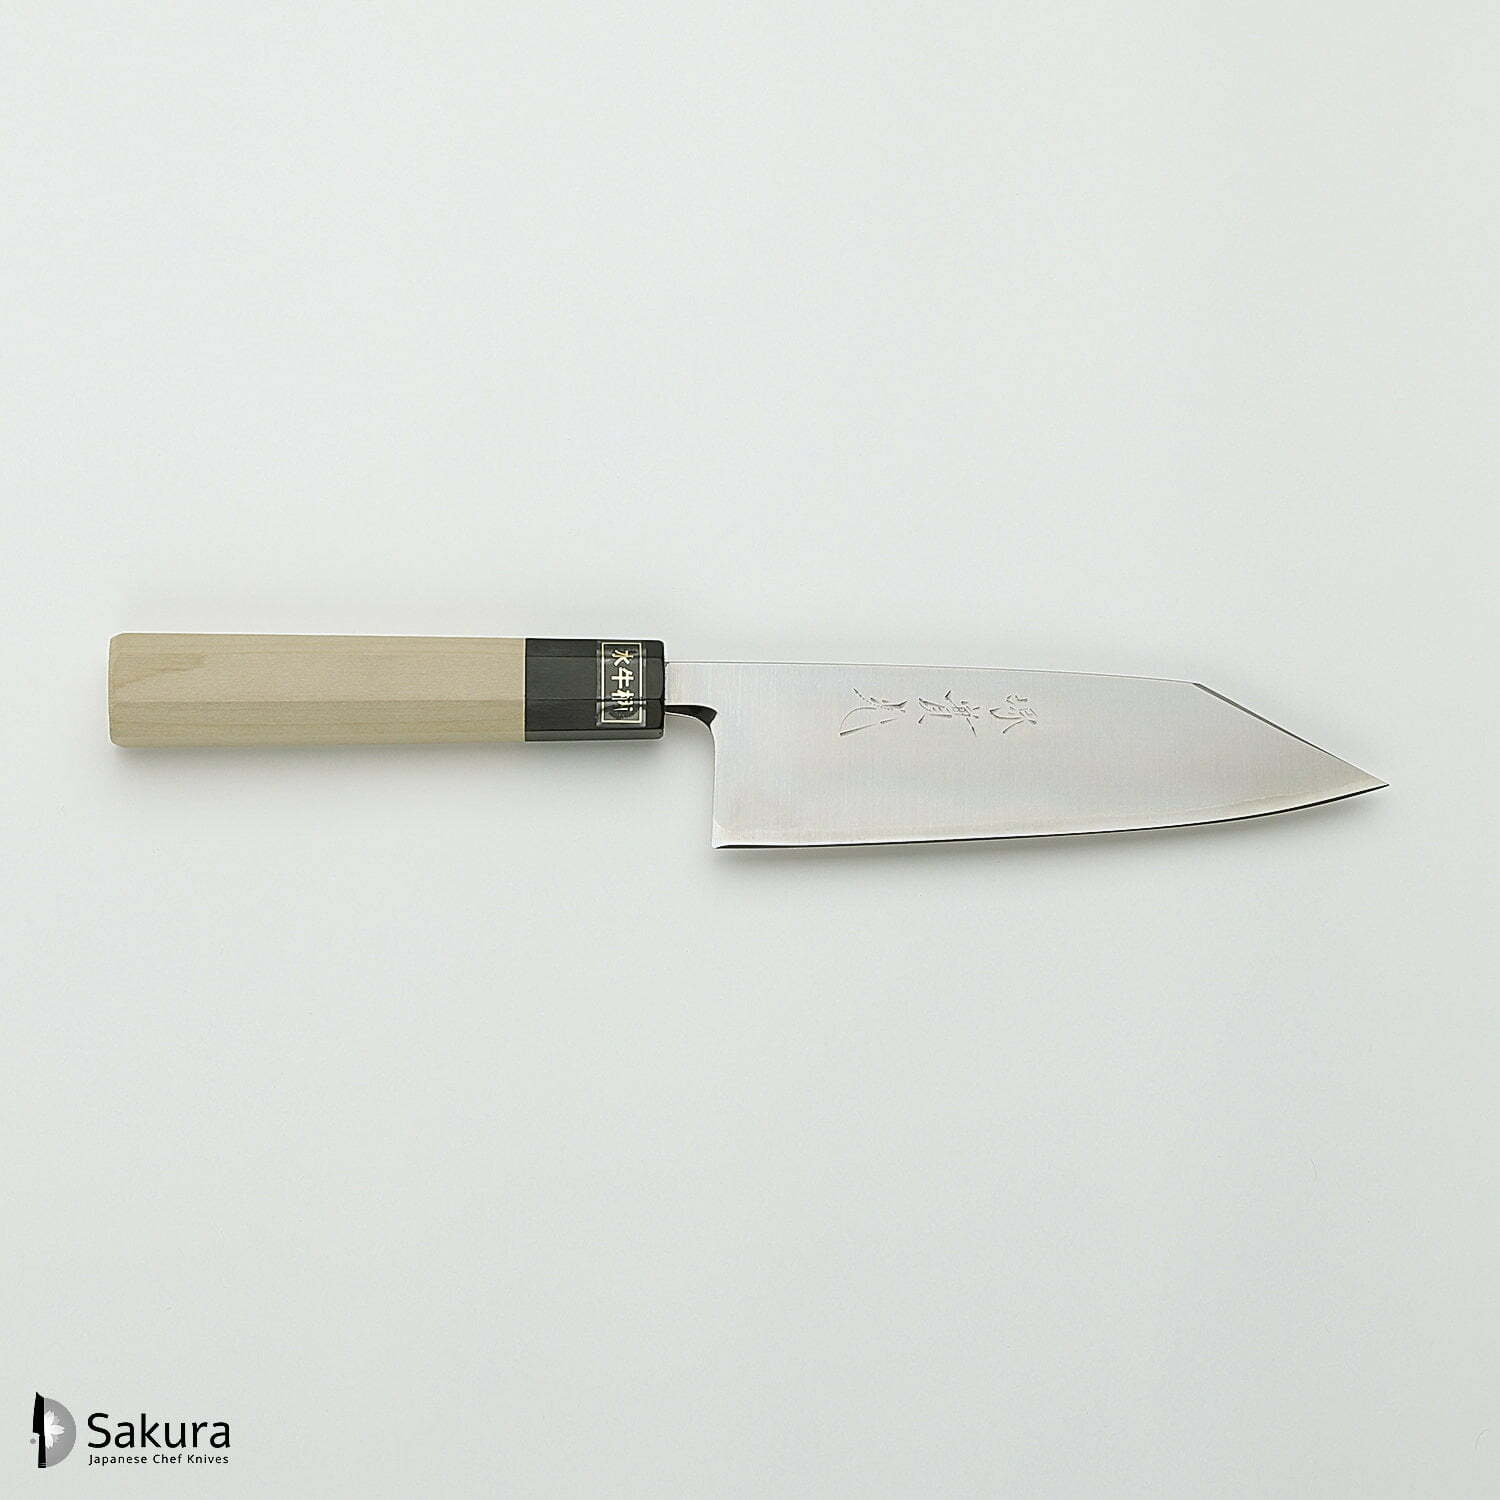 סכין רב-תכליתית בּוּנְקָה 165מ״מ מחוזקת 3 שכבות: פלדת פחמן יפנית מתקדמת מסוג R2/SG2 עטופה פלדת אל-חלד גימור מבריק ג׳יקו סאקאיי יפן